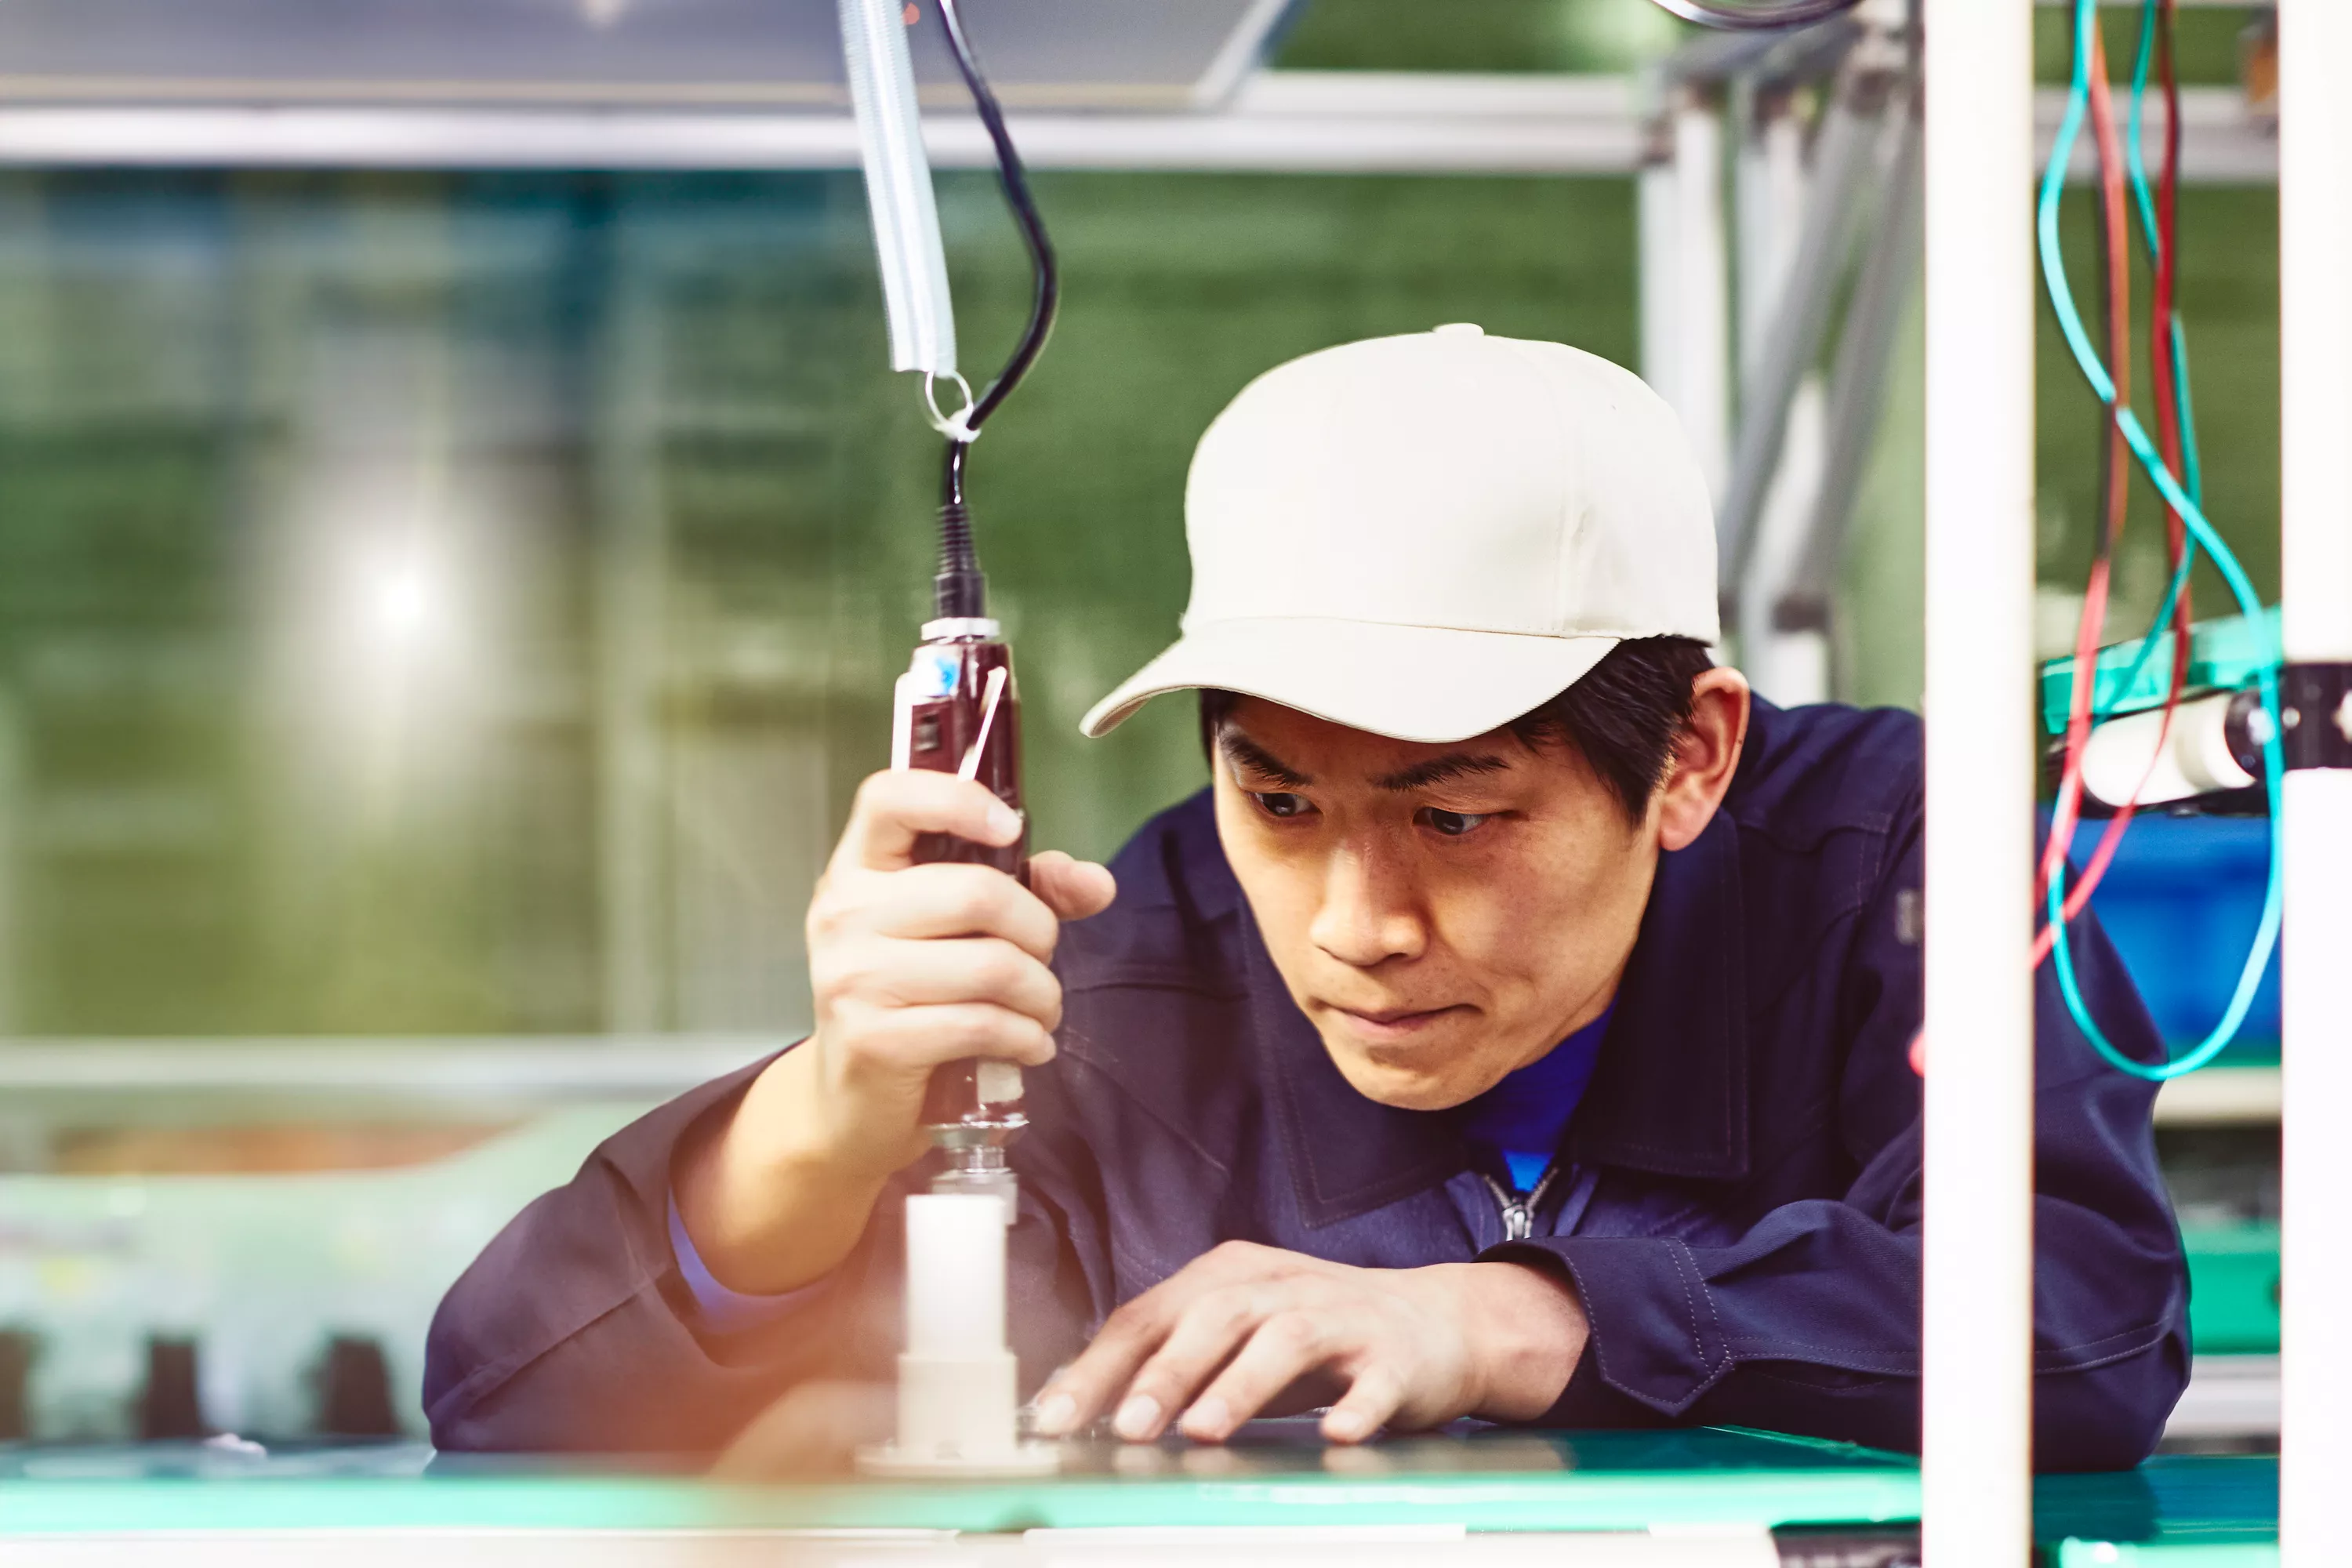 Mann mit weißer Kappe und blauem Overall, der mit Werkzeugen auf einer Produktionsstätte arbeitet